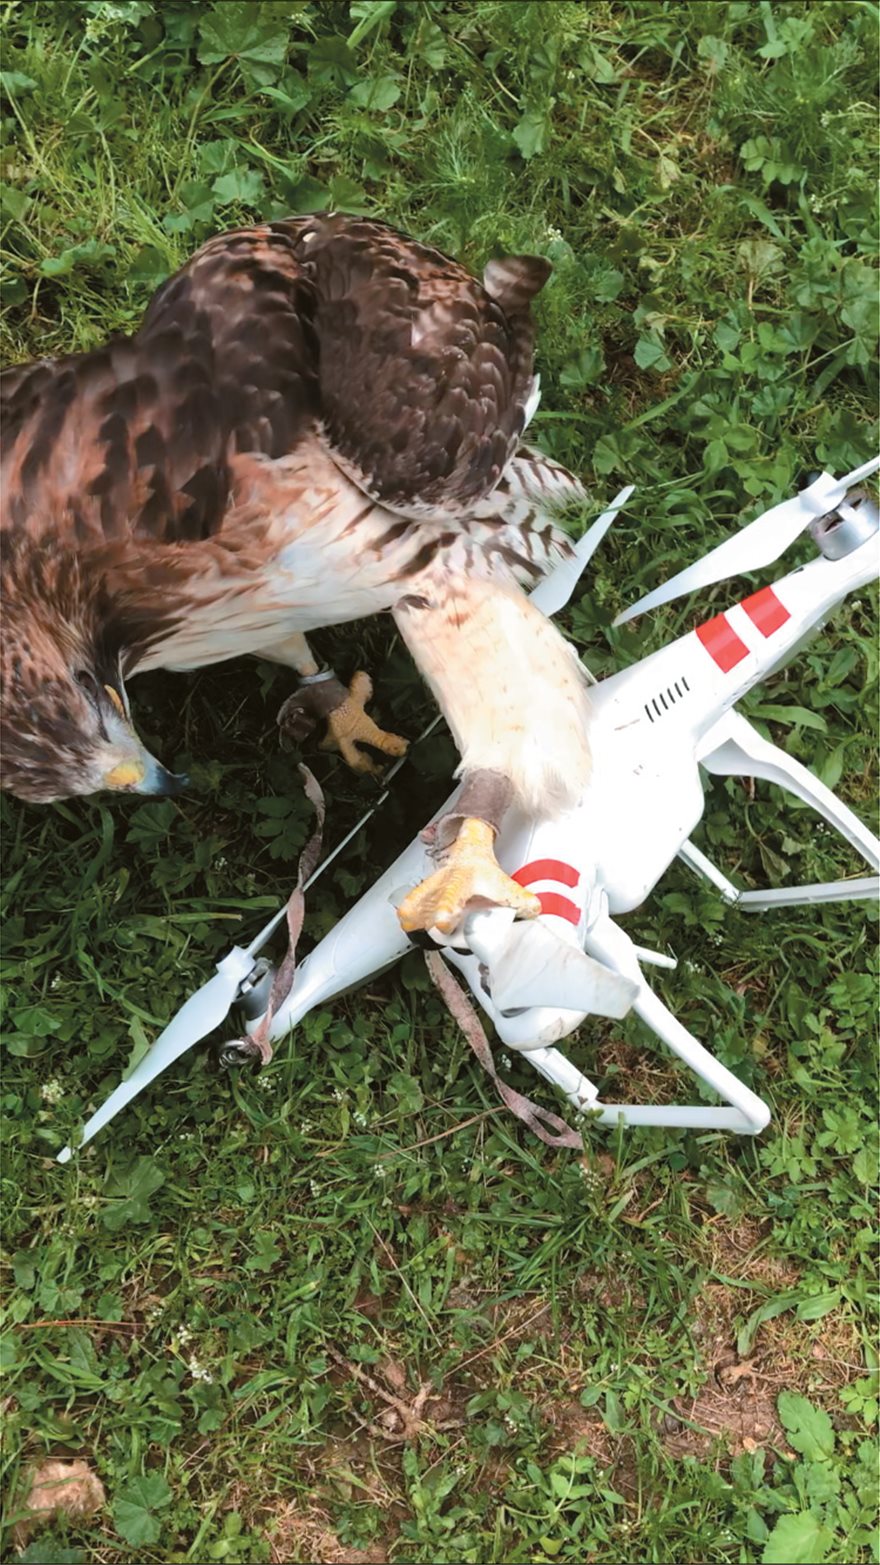 To γεράκι που καταρίπτει drones - Φωτογραφία 5